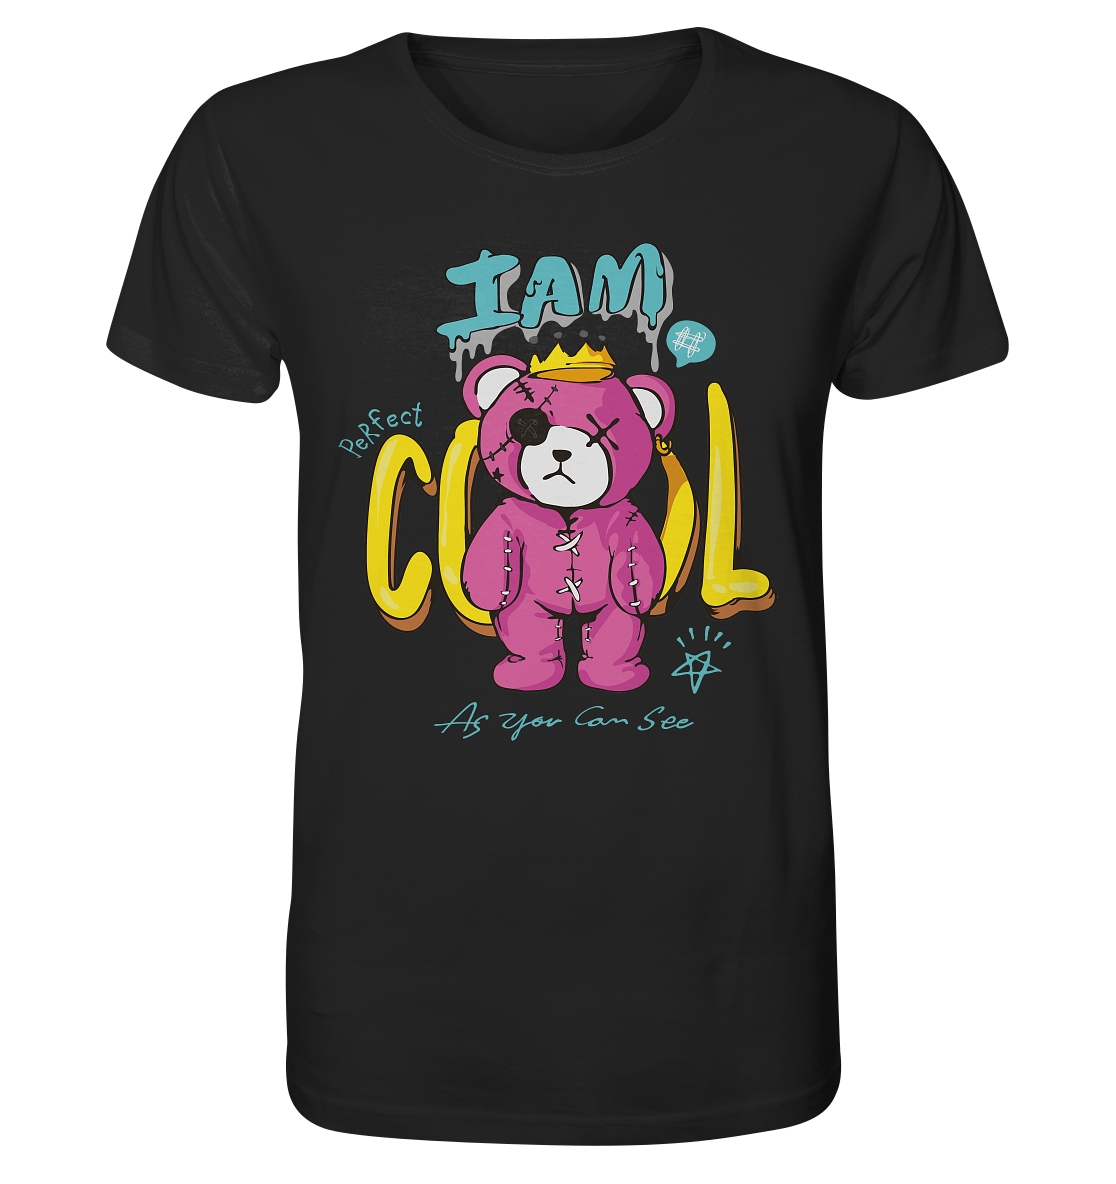 I am cool Teddy - Organic Shirt